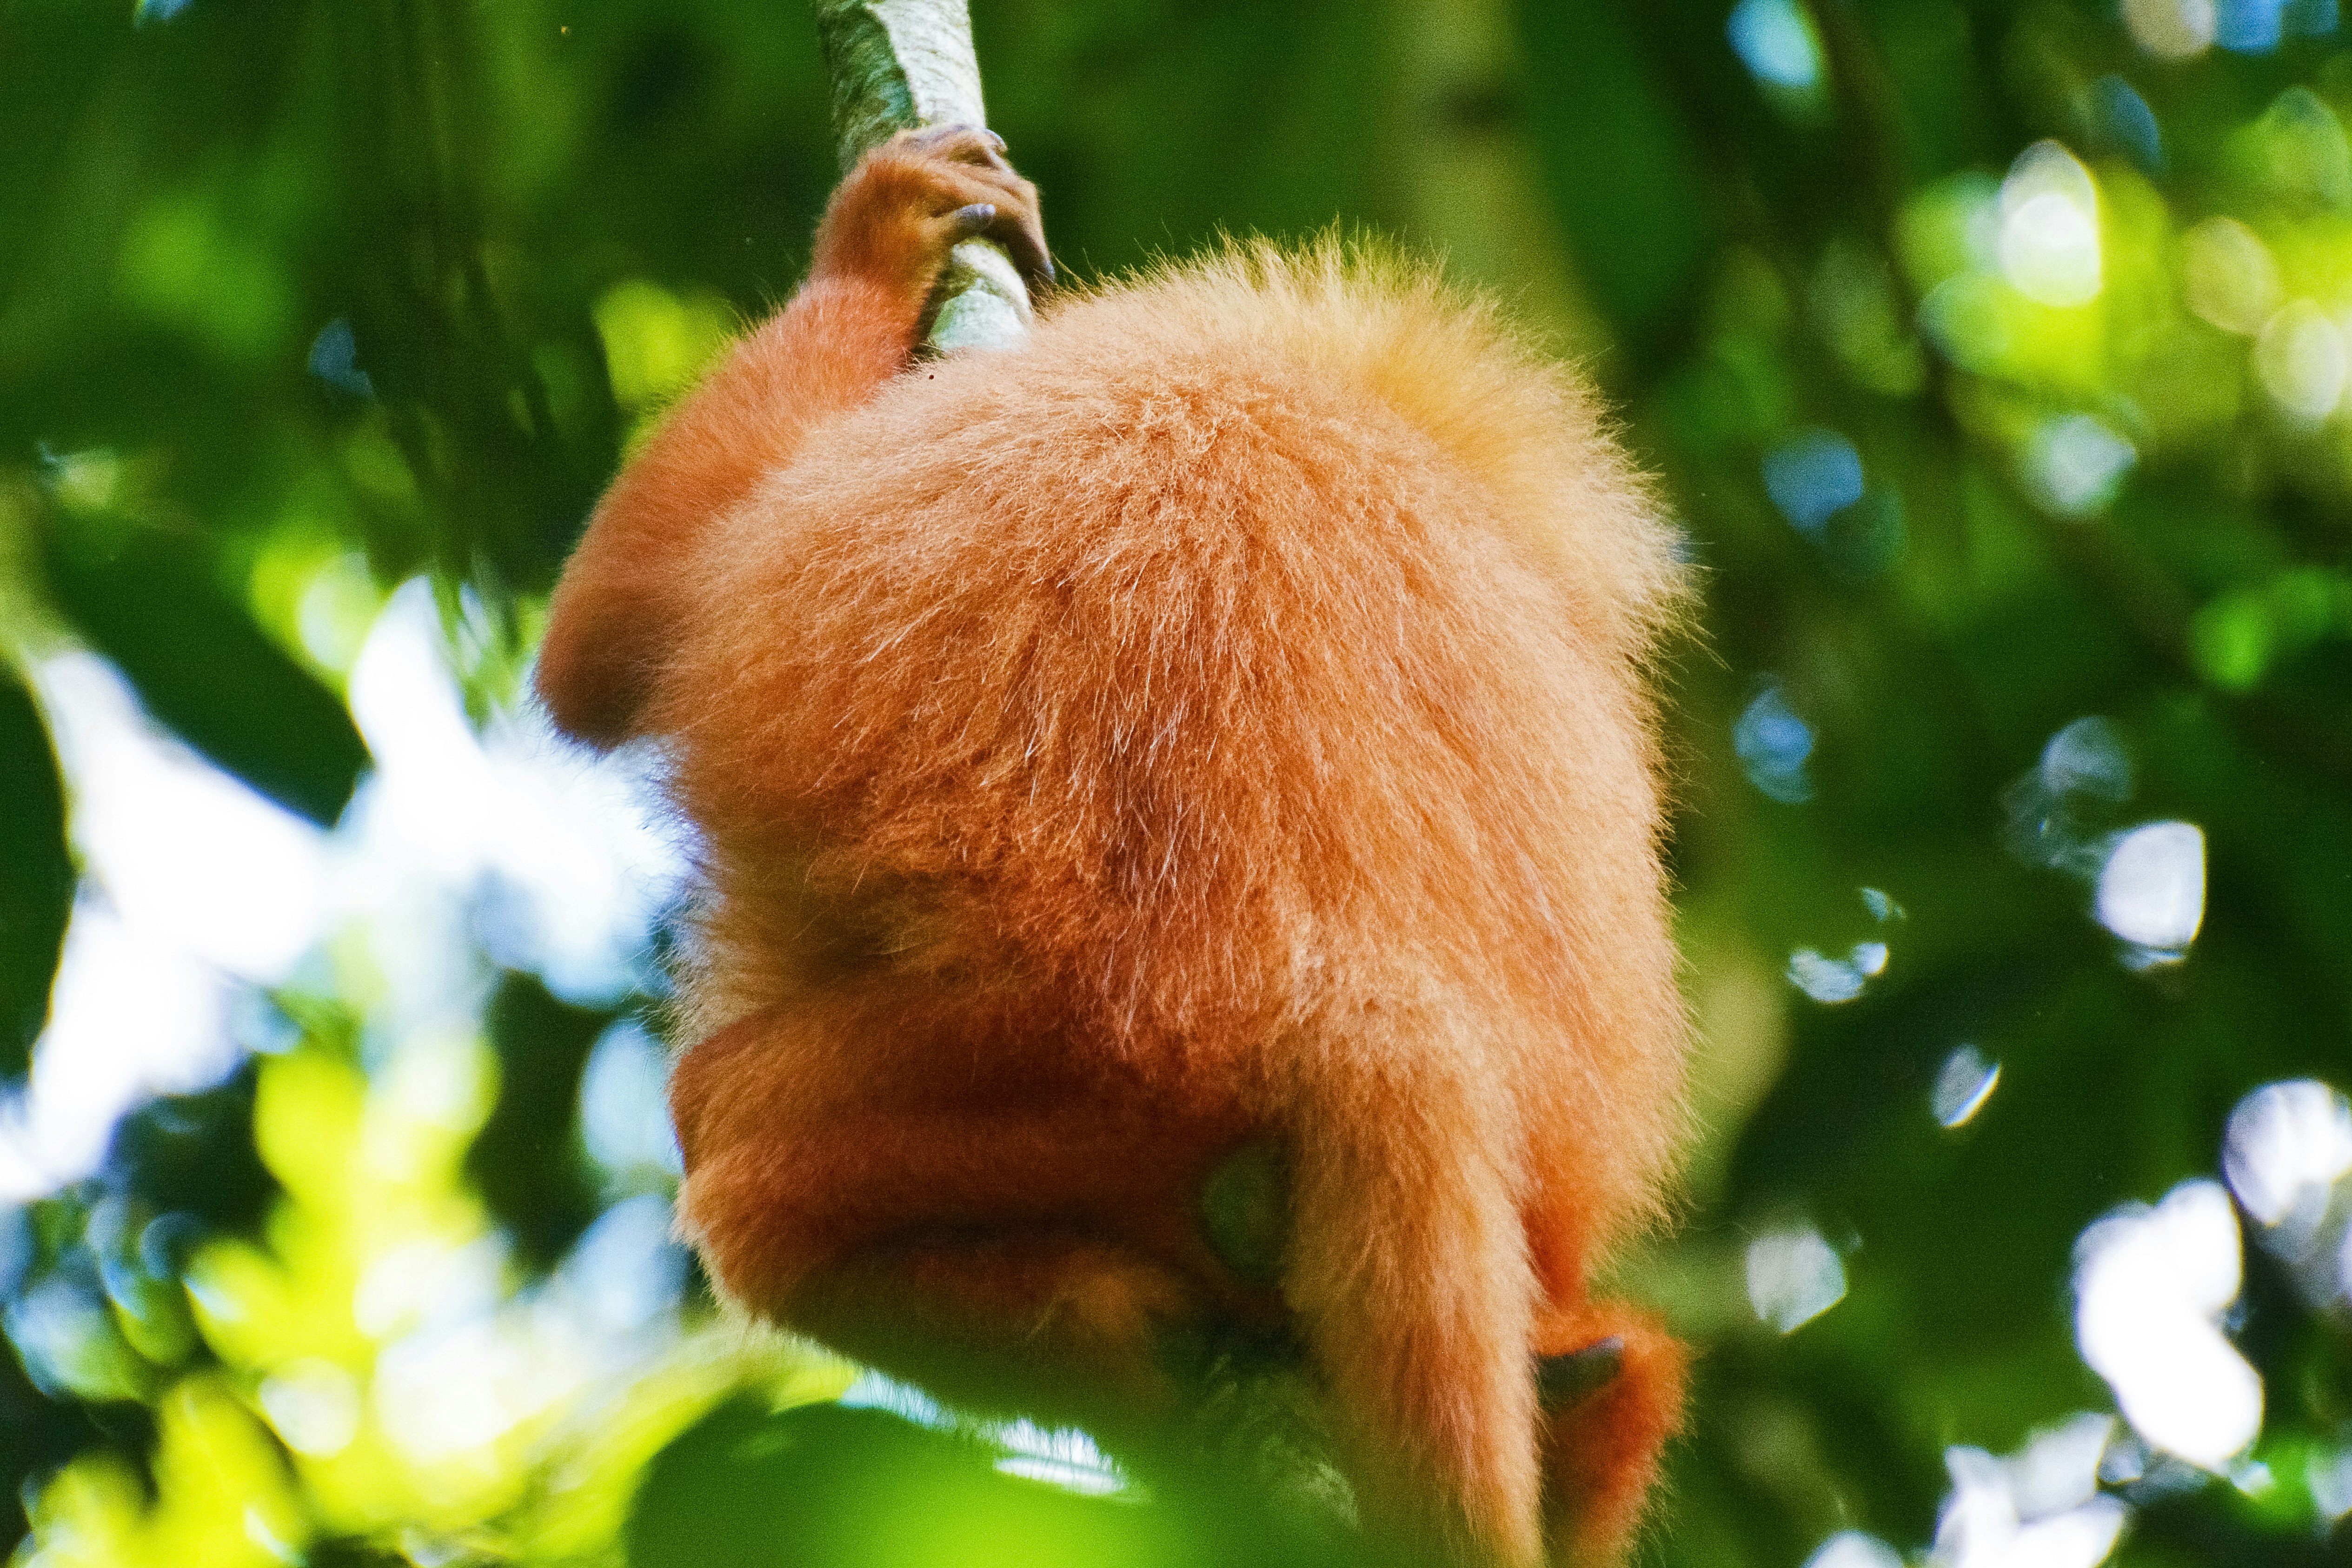 brown monkey hanging on tree during daytime